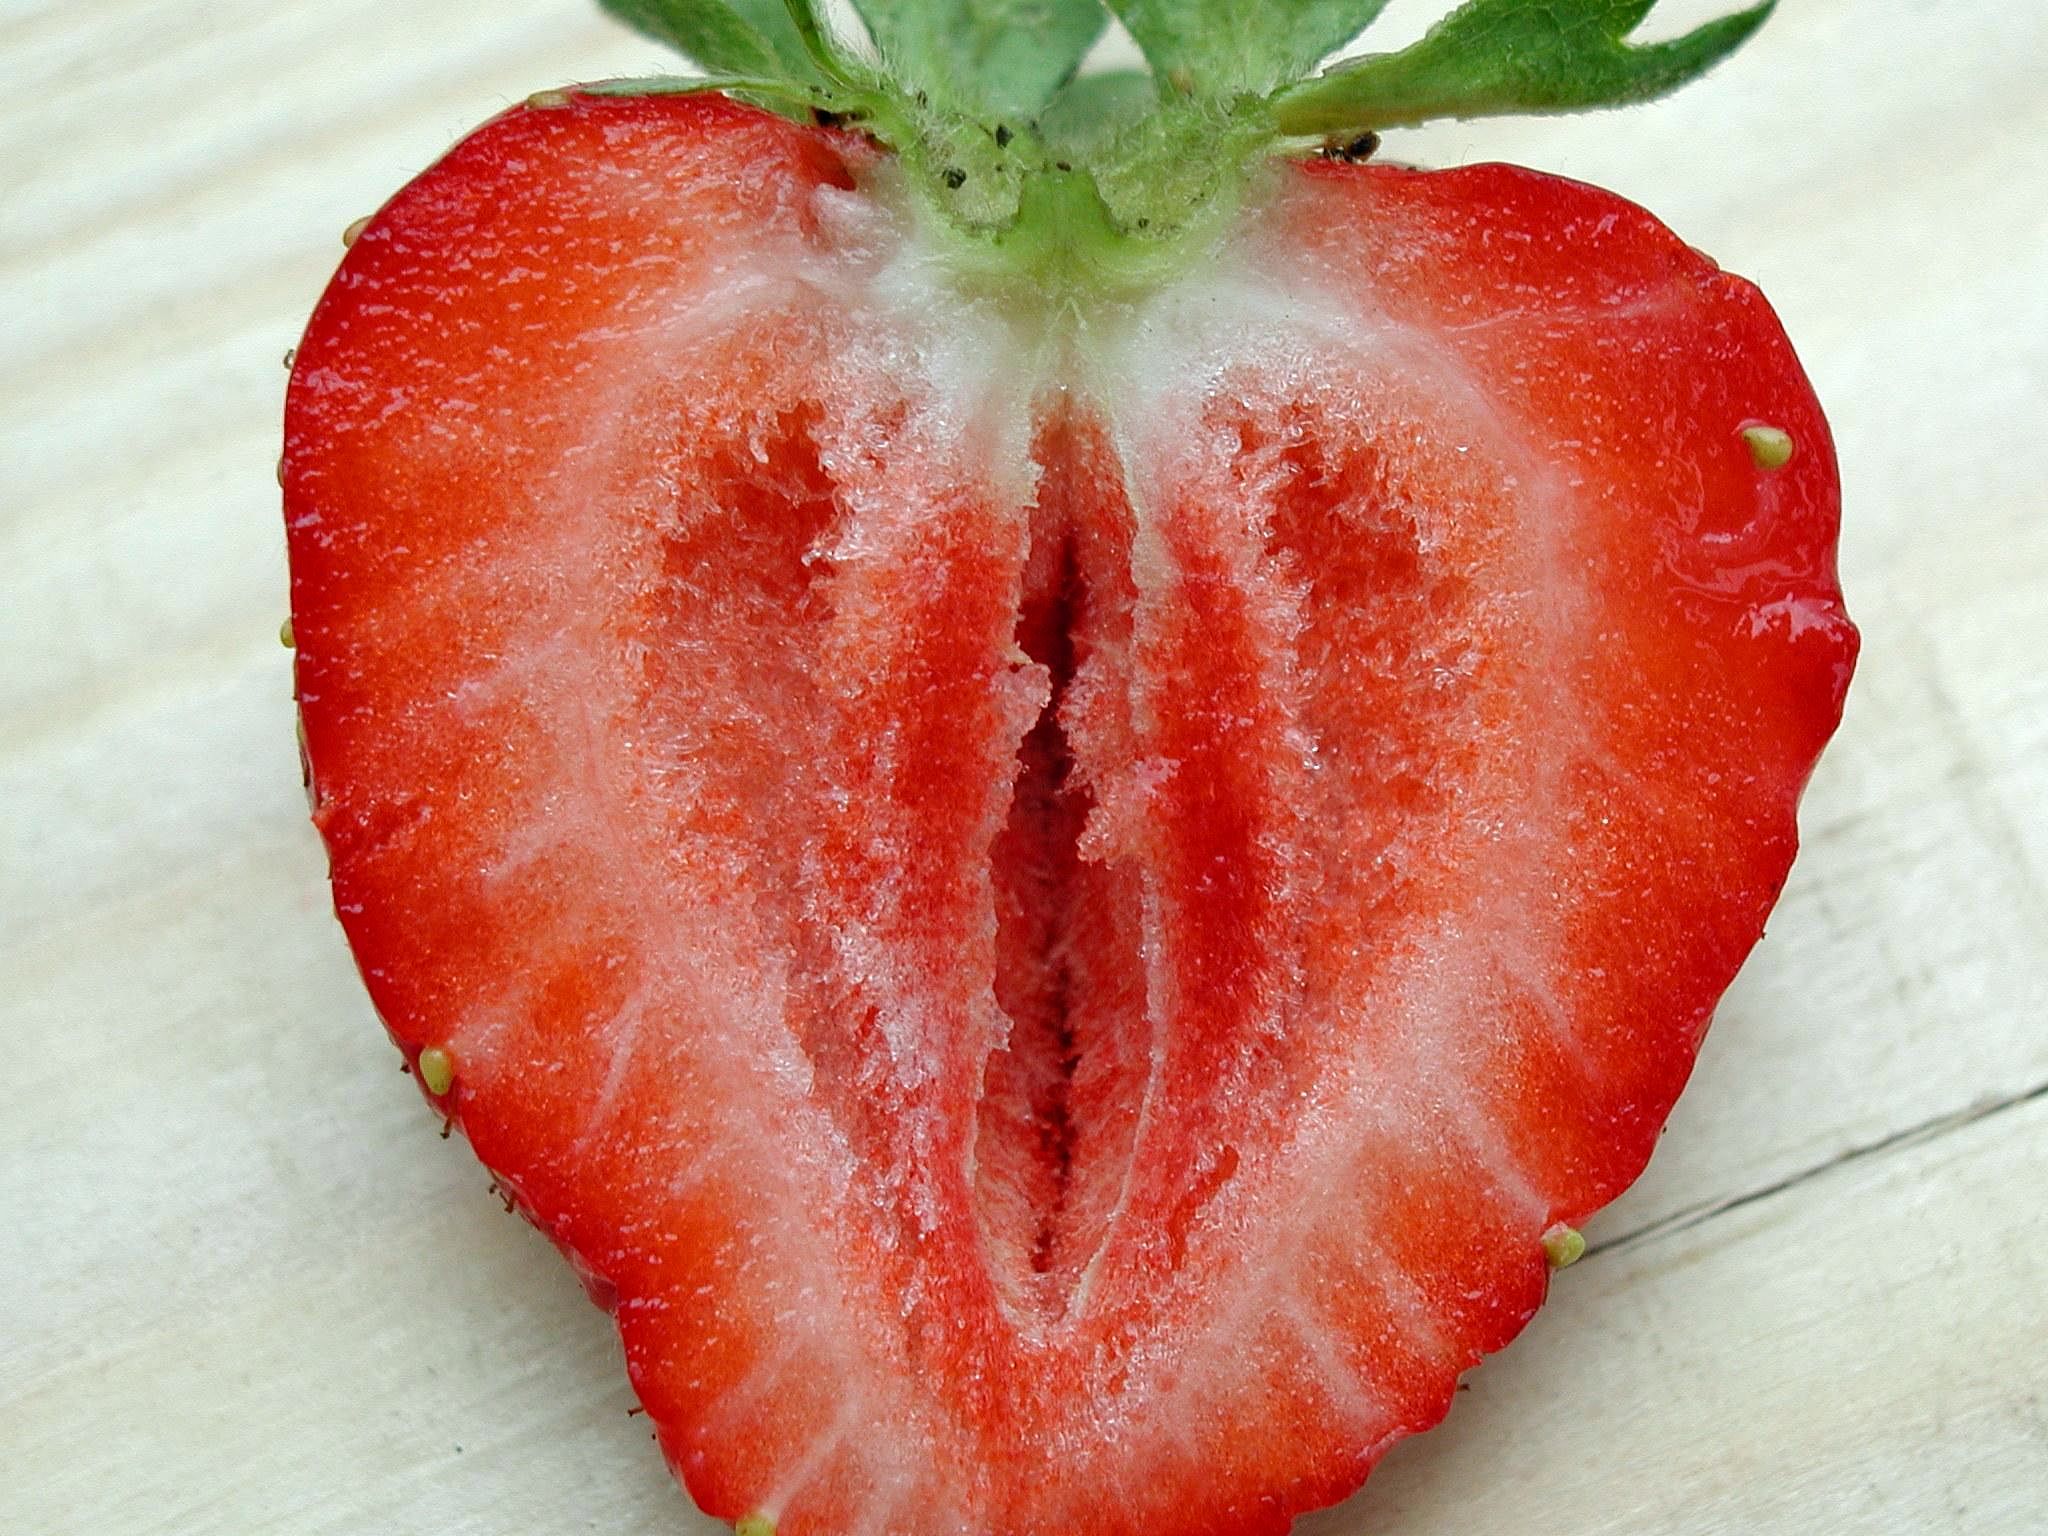 草莓纵切面图片